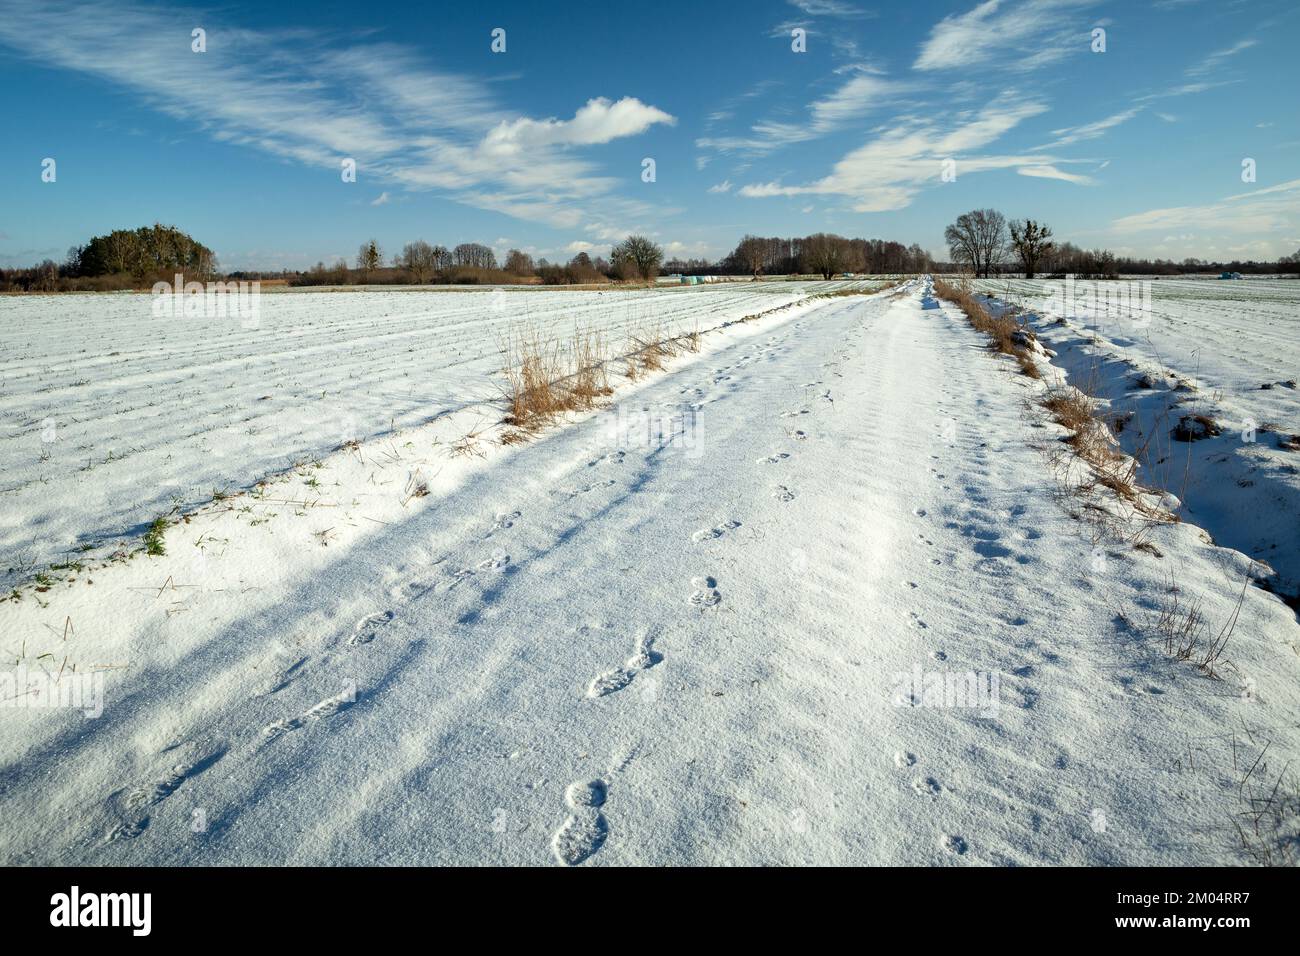 Empreintes de pas sur une route enneigée entre les champs, par beau temps d'hiver Banque D'Images